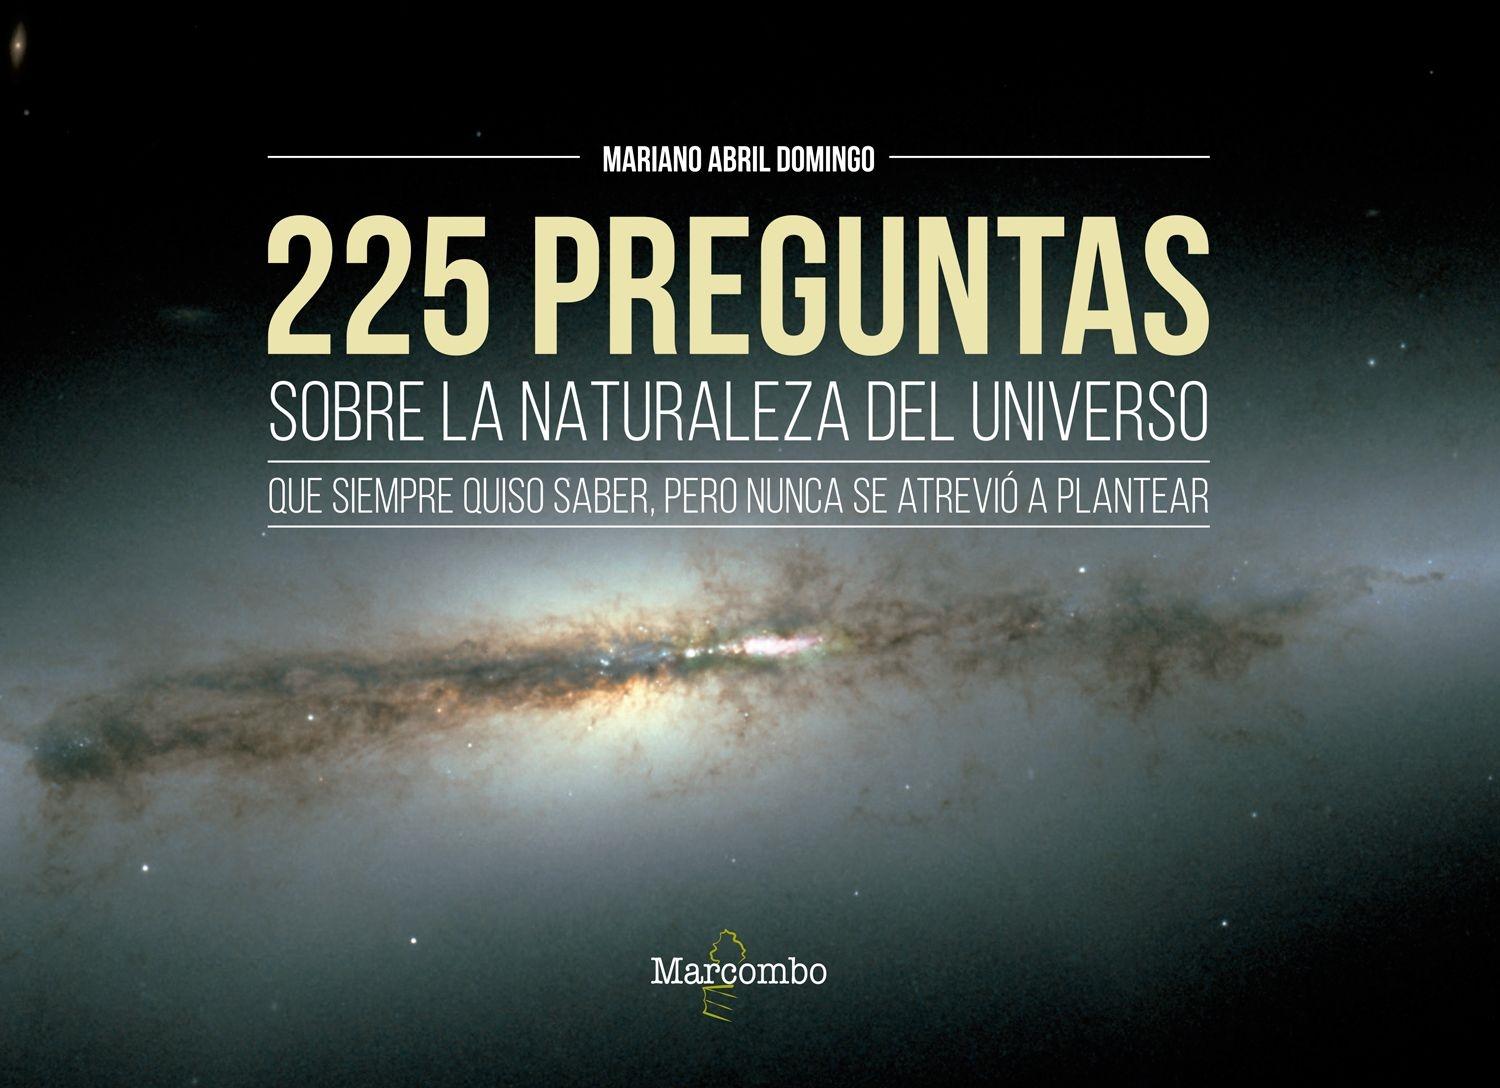 225 preguntas sobre la naturaleza del universo